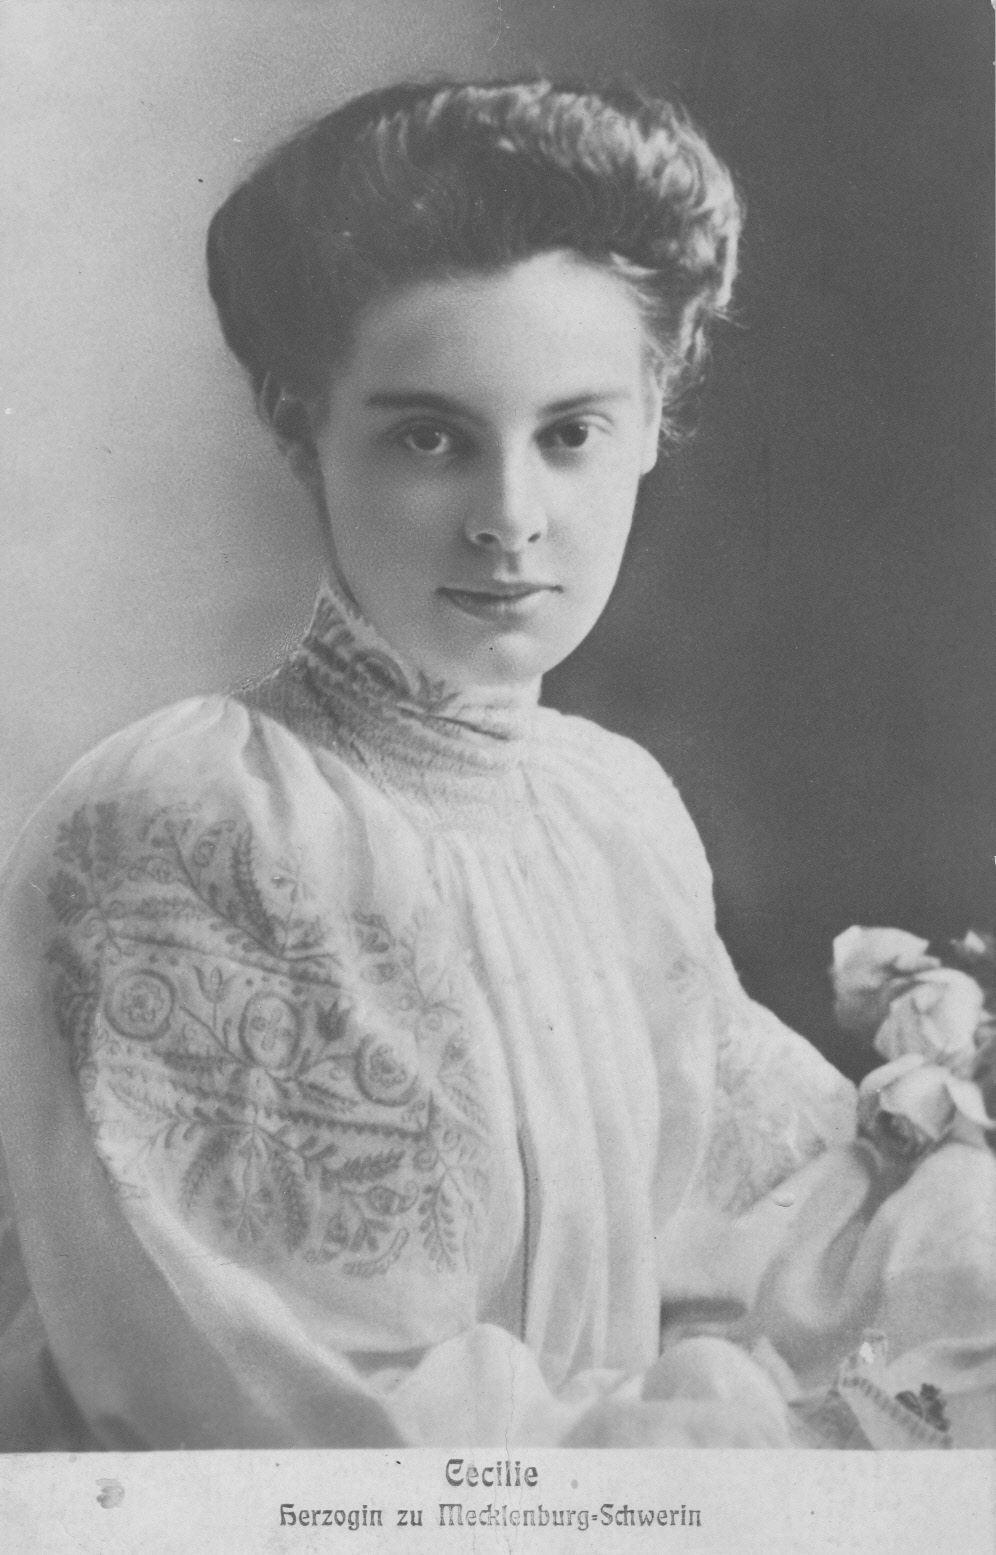 Cecilie Herzogin zu Mecklenburg-Schwerin, Prinzessin von Preußen